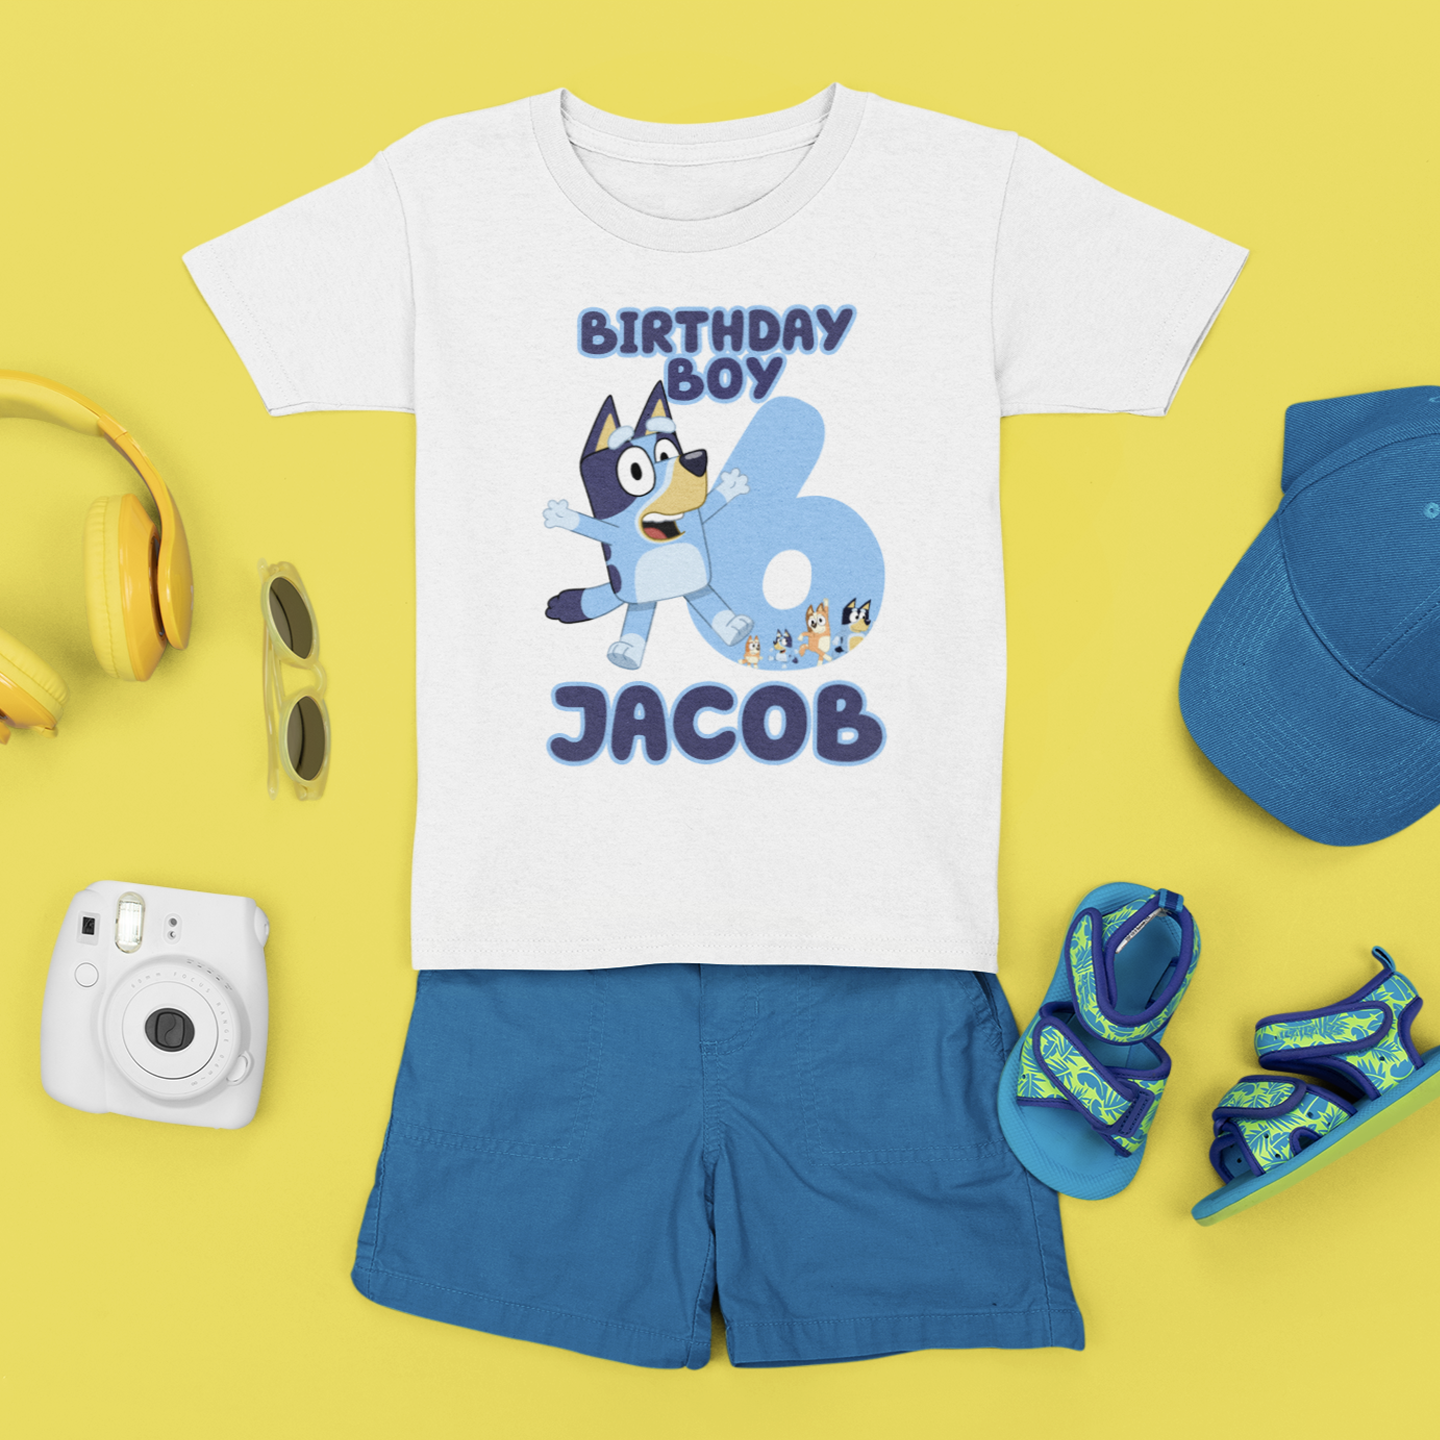 Bluey Inspired Birthday Boy Tshirt, Bluey Birthday Shirt